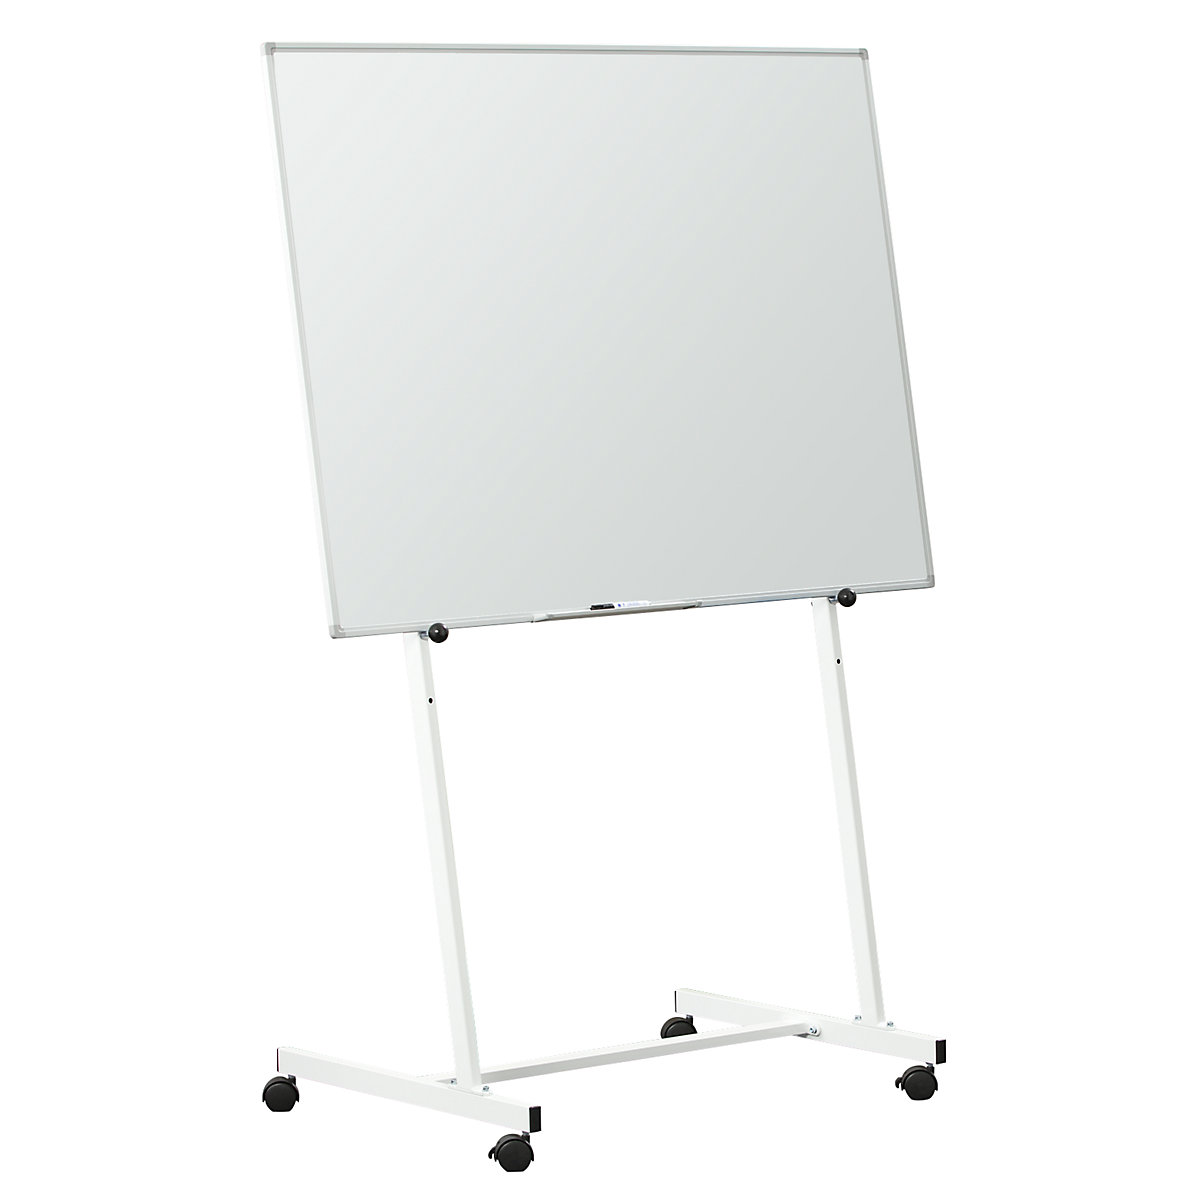 Tafelgestell mobil, für Tafel bis 1000 mm Höhe, für Tafelbreiten 900 – 1500 mm-4